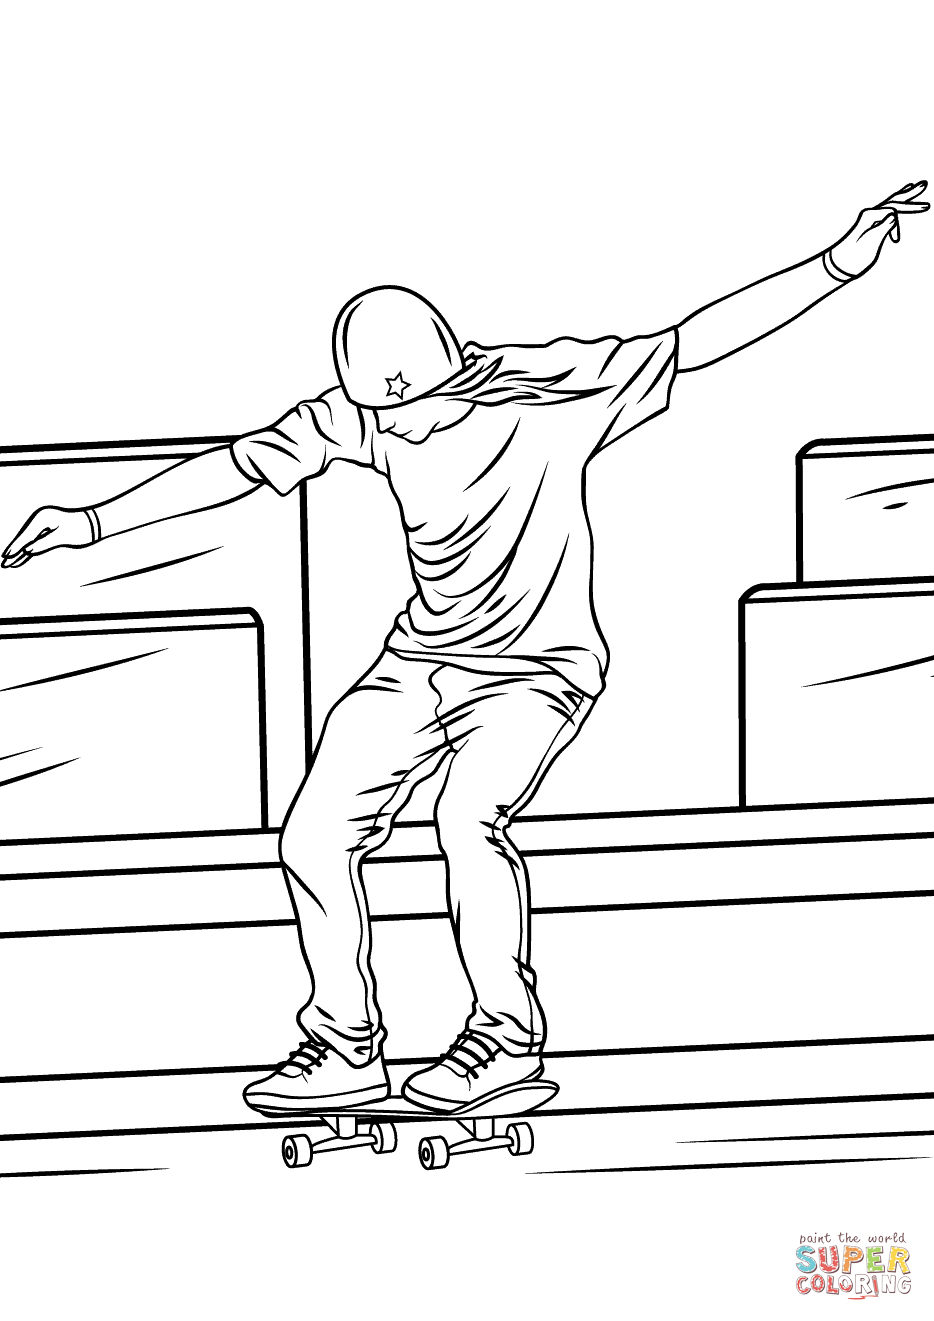 Ausmalbild: Cartoon Skateboarder  Ausmalbilder Kostenlos Zum Ausdrucken destiné Coloriage Skate 